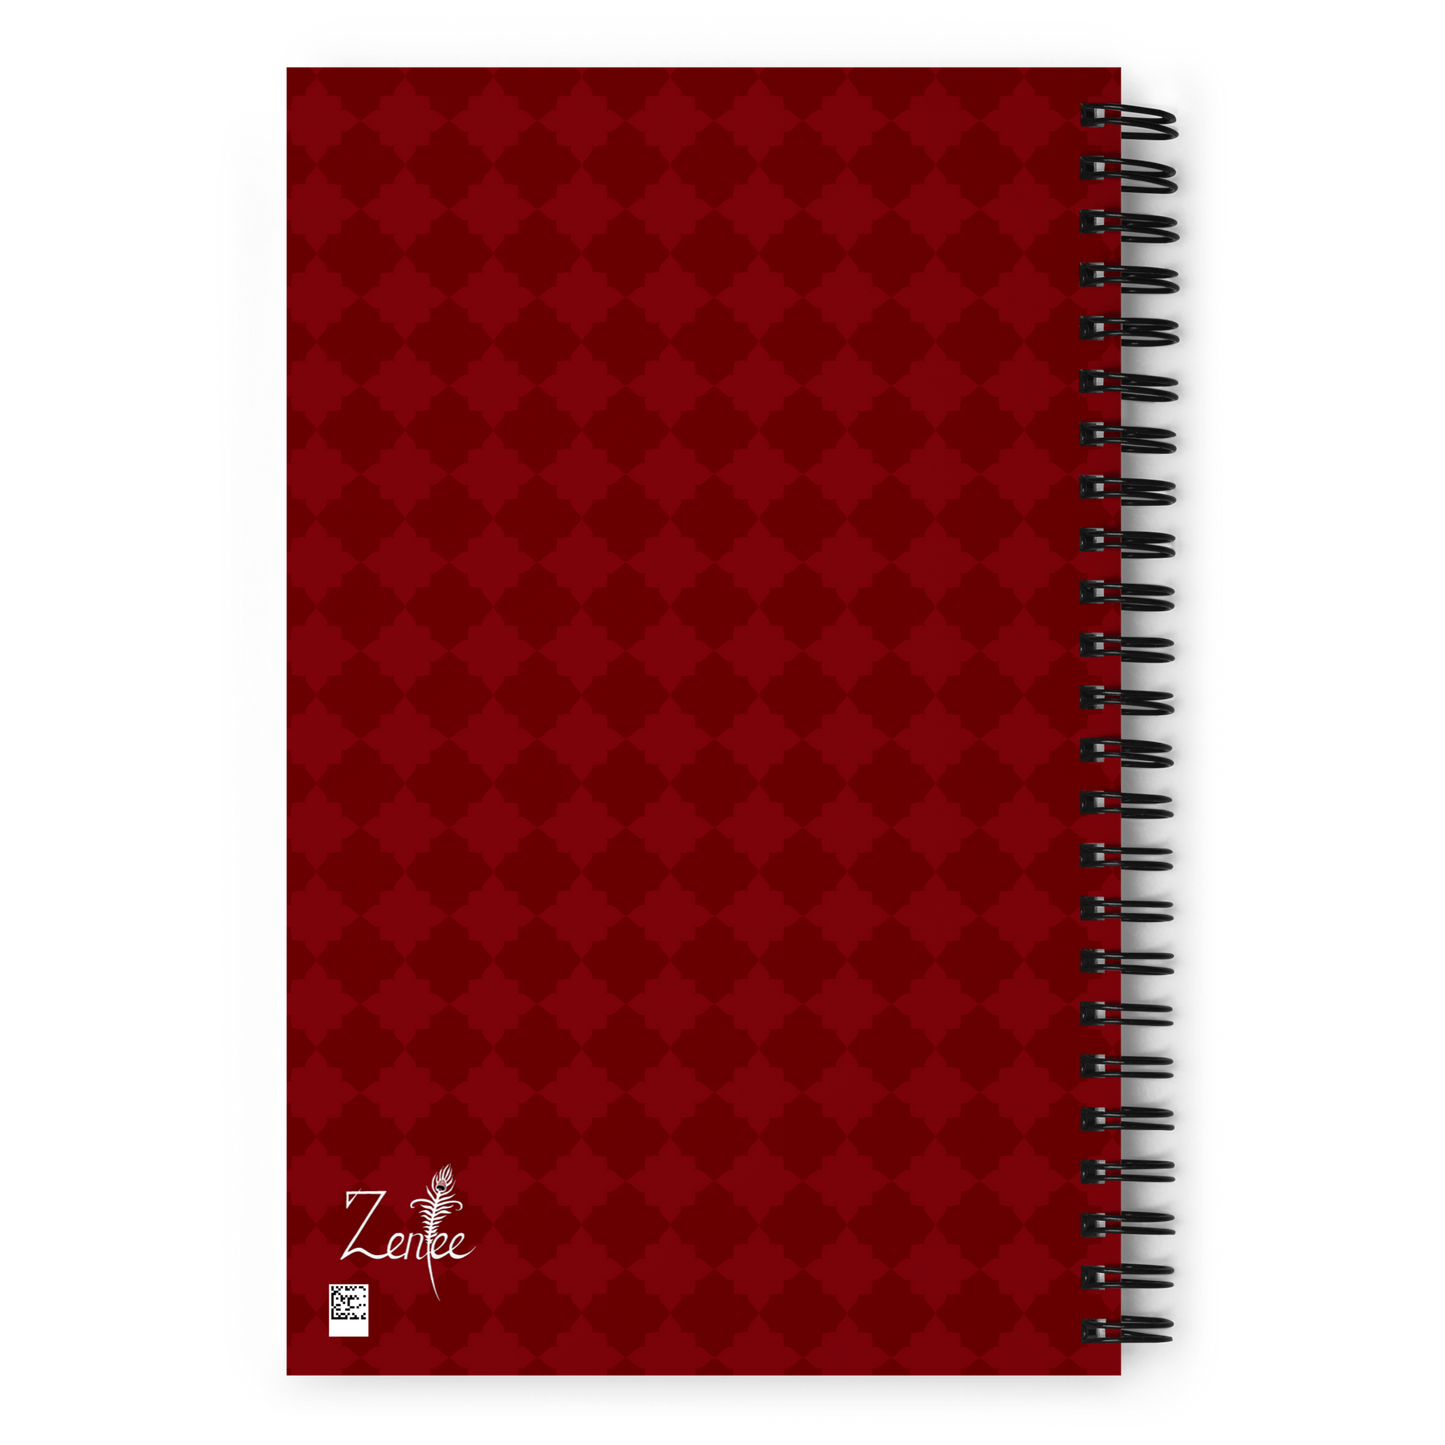 Bookworm - Spiral notebook